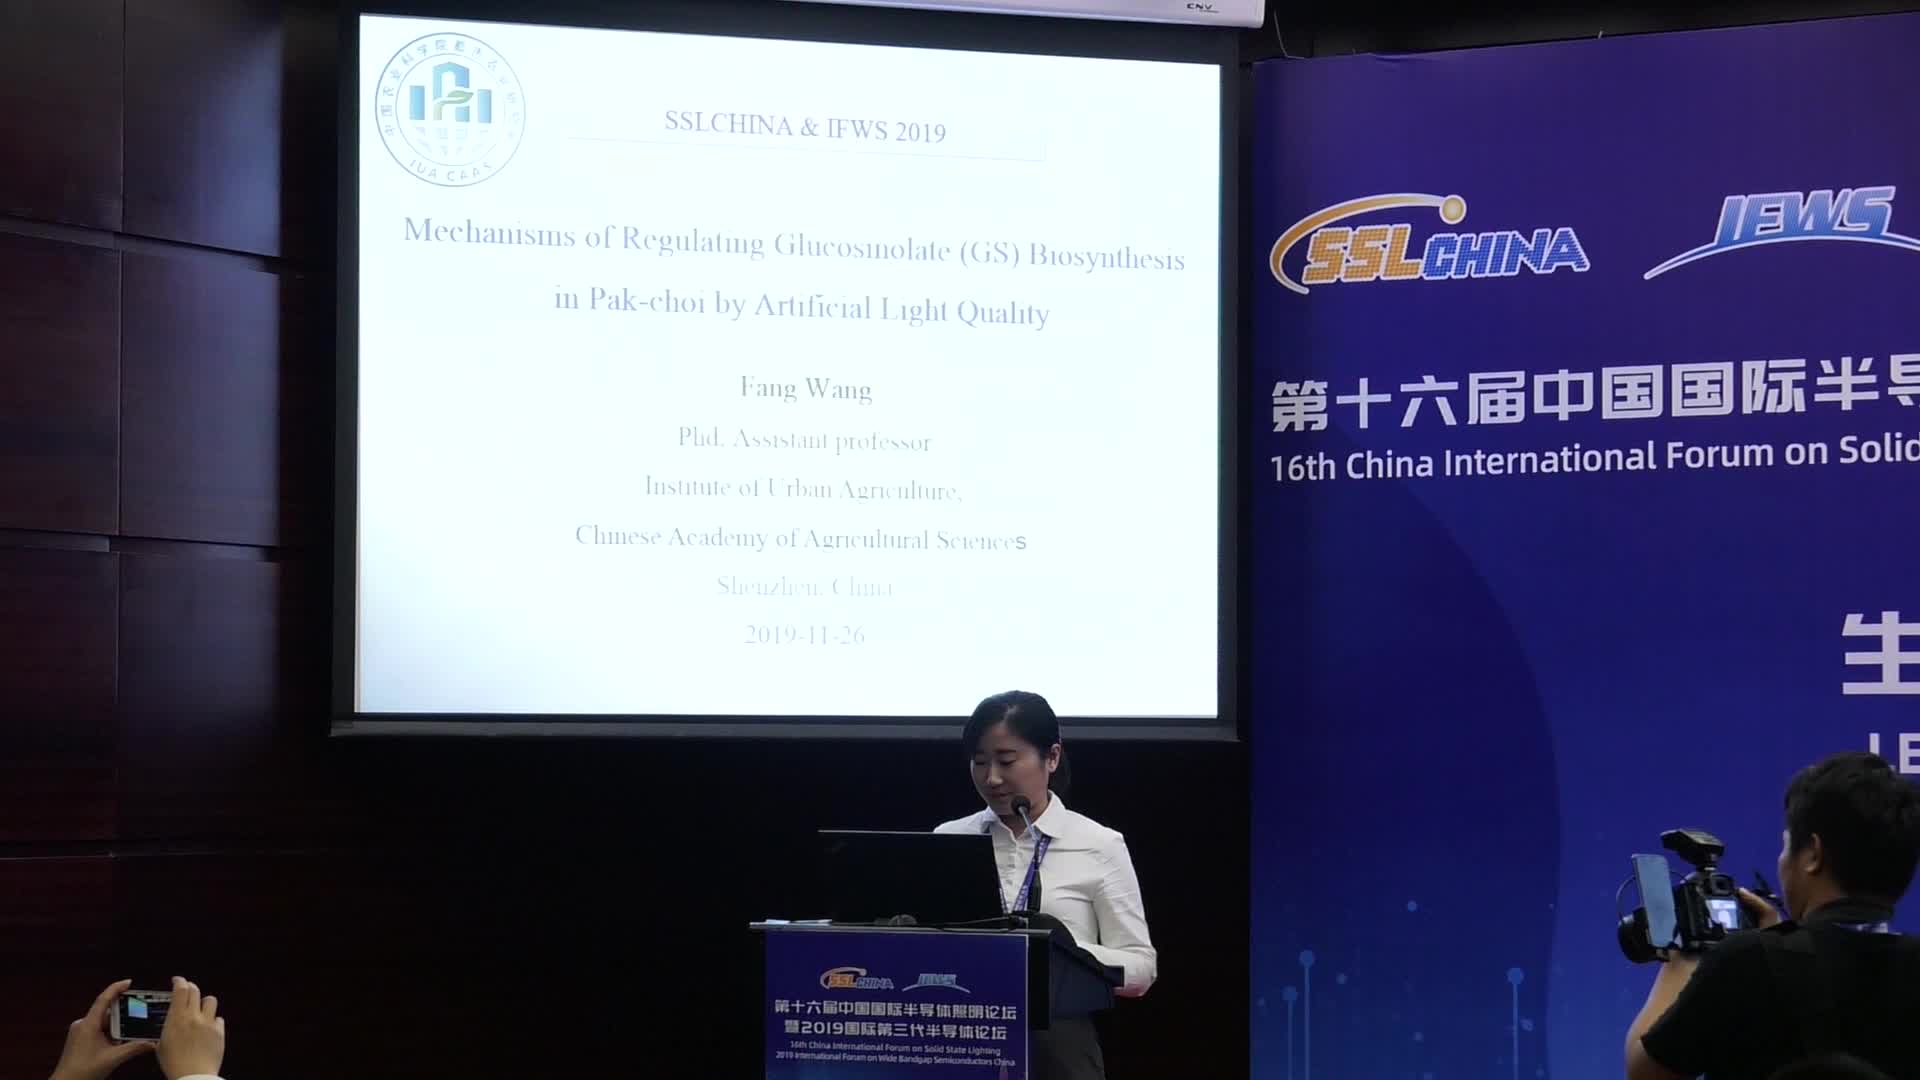 【视频报告】中国农业科学院都市农业研究所王芳：利用人工光质调控小白菜硫苷生物合成的机制研究